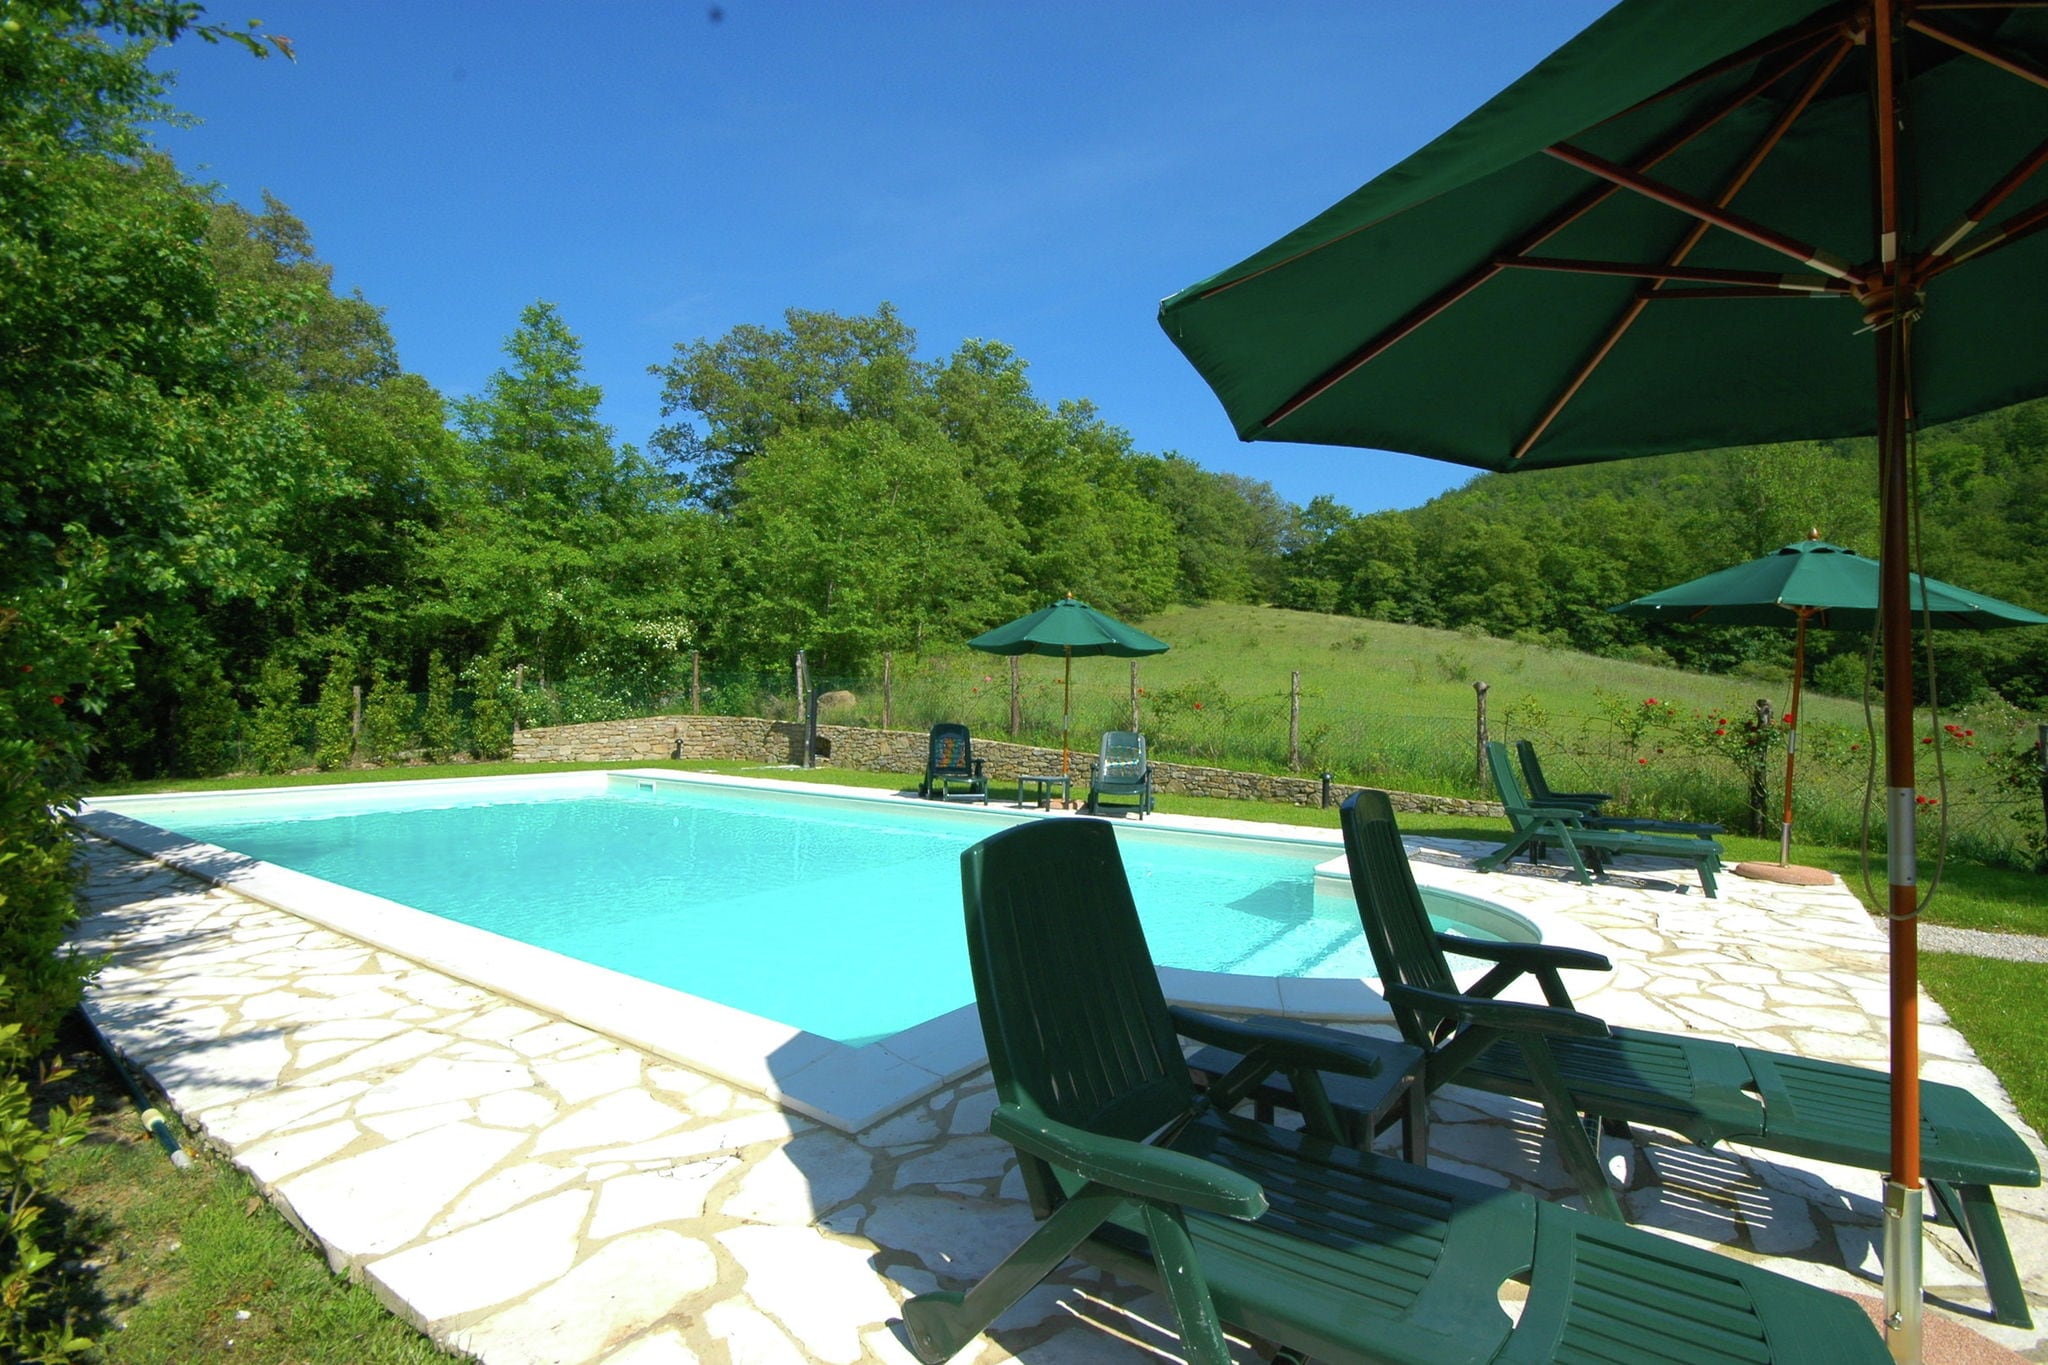 Fascinerend vakantiehuis in Umbrië met zwembad